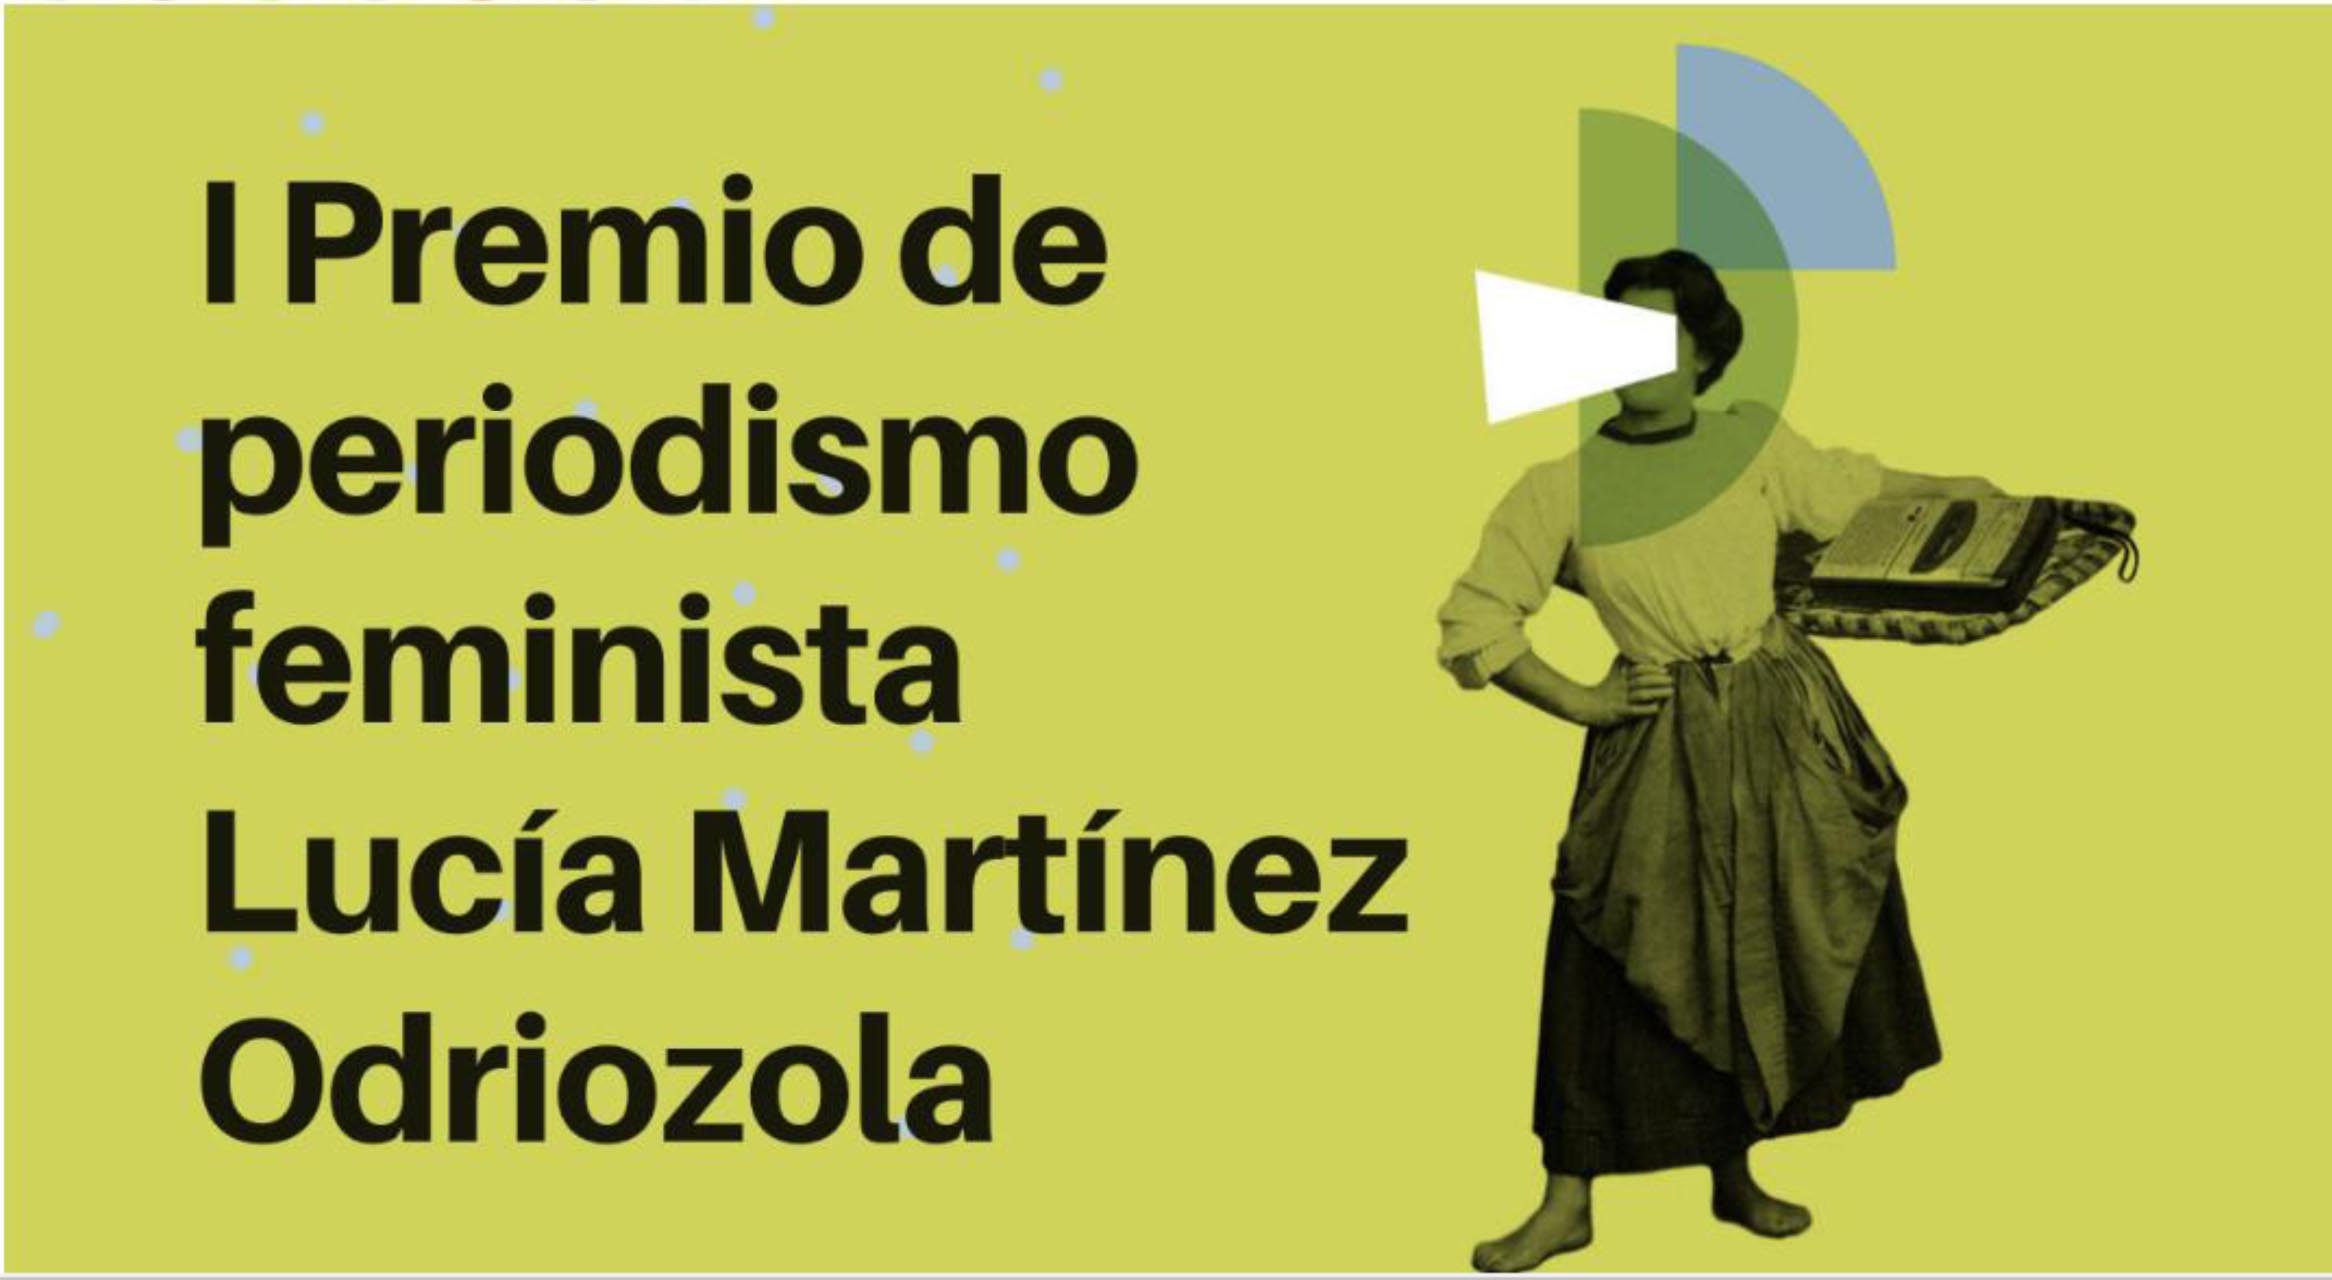 I Premio de periodismo feminista Lucía Martínez Odriozola